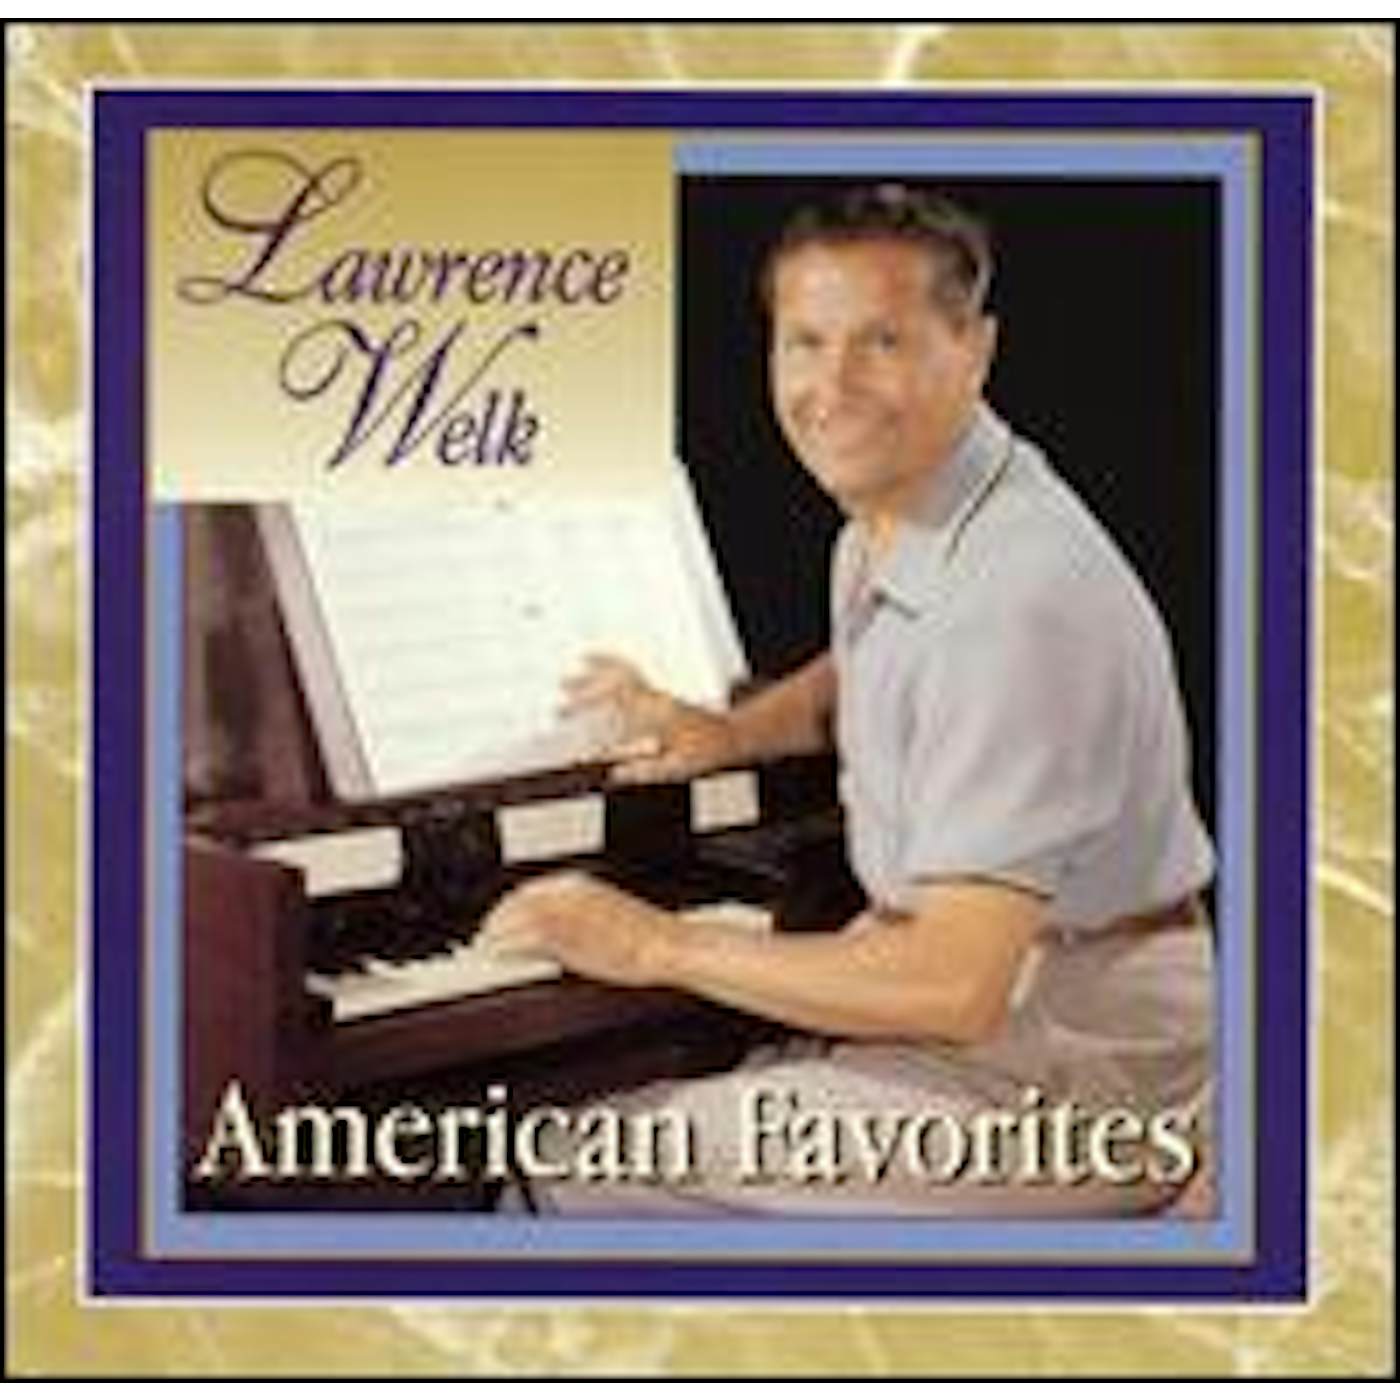 Lawrence Welk AMERICAN FAVORITES CD